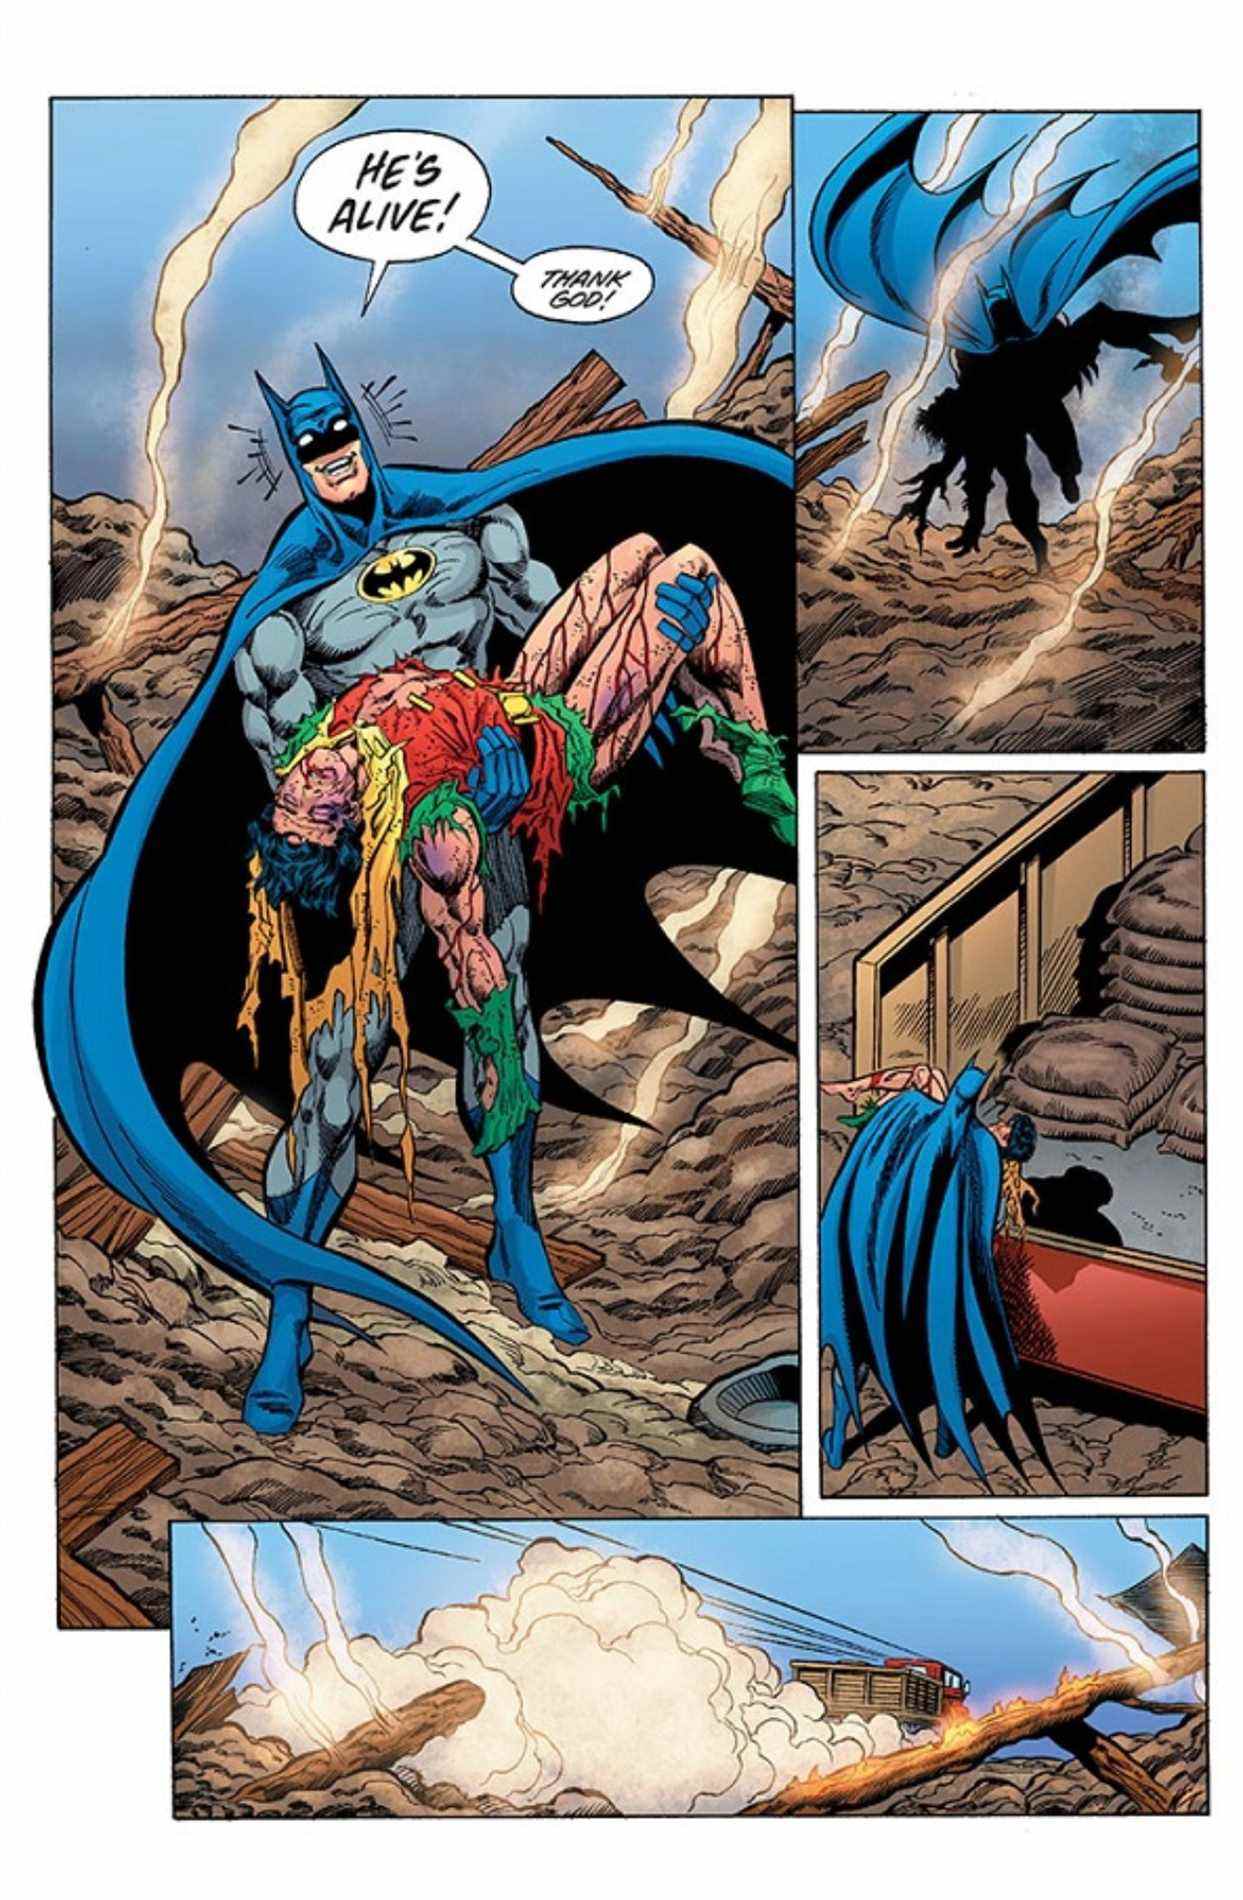 La fin alternative de Batman # 428 dessinée par Jim Aparo et Mike DeCarlo, colorée par Alex Sinclair et publiée pour la première fois en 2006 dans Batman Annual # 25